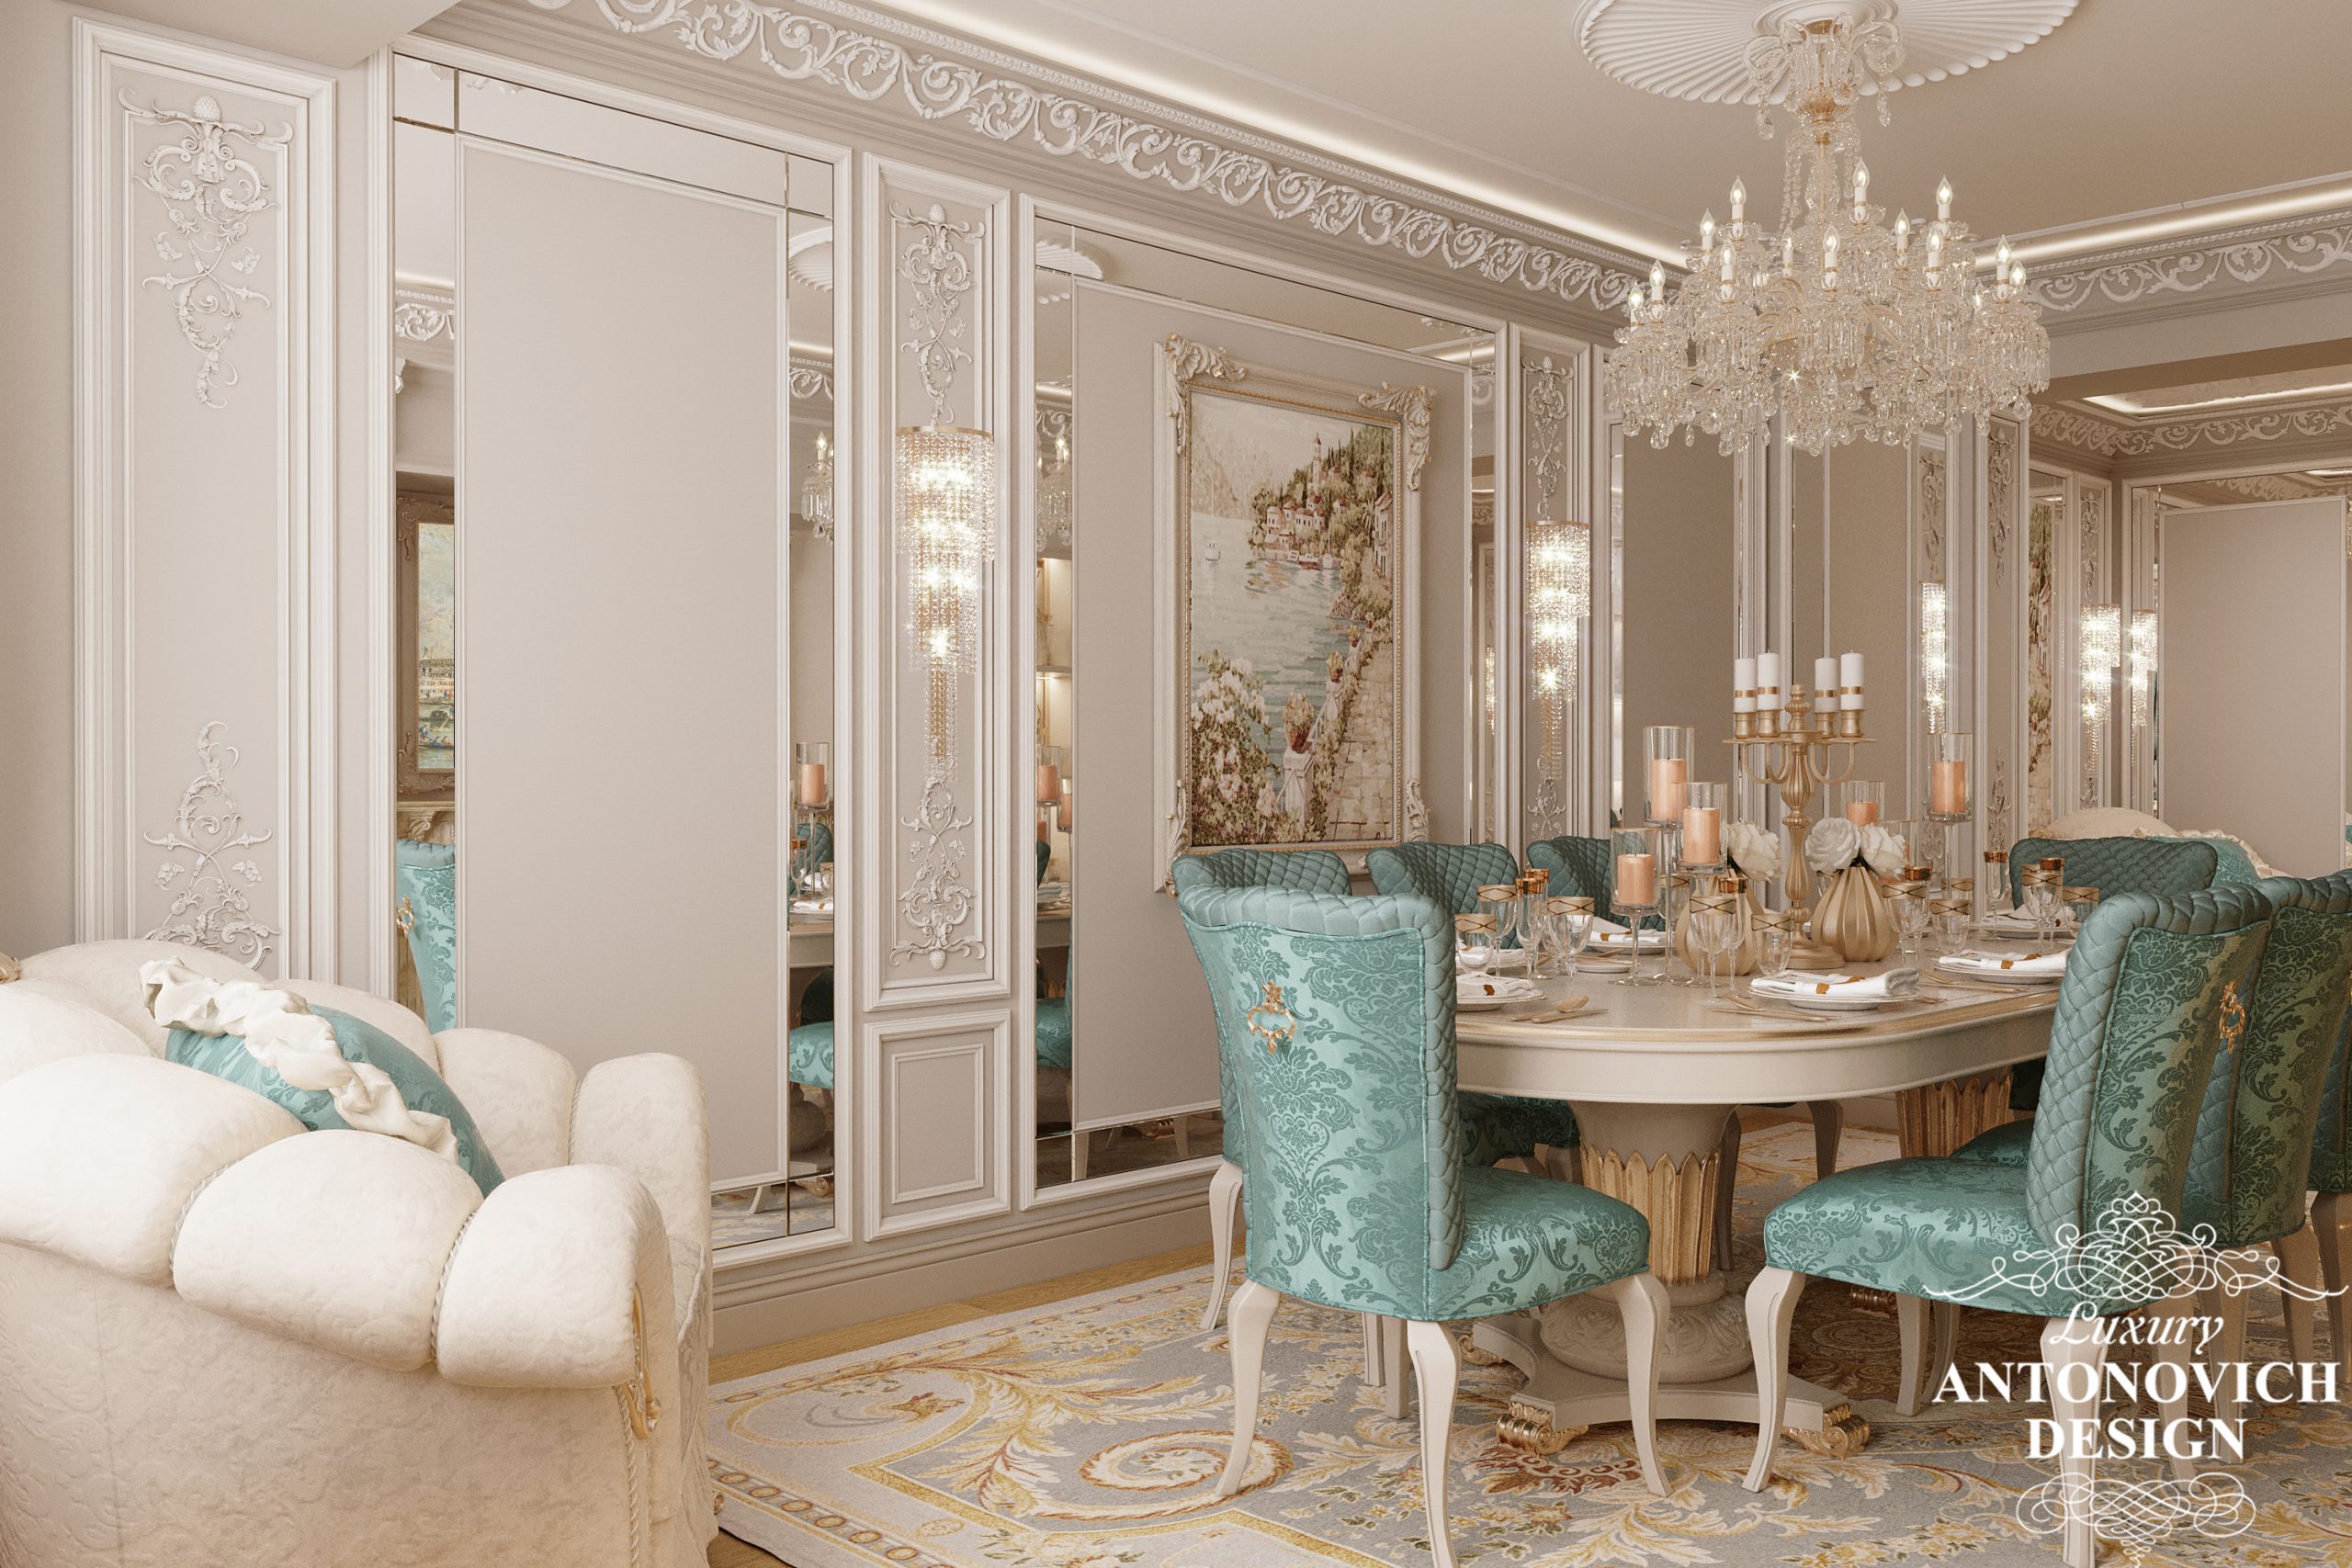 Вітальня і їдальня в елегантному неокласичному стилі з оксамитовим текстилем і дивовижним декором в авторському дизайнерському проекті елітної квартири